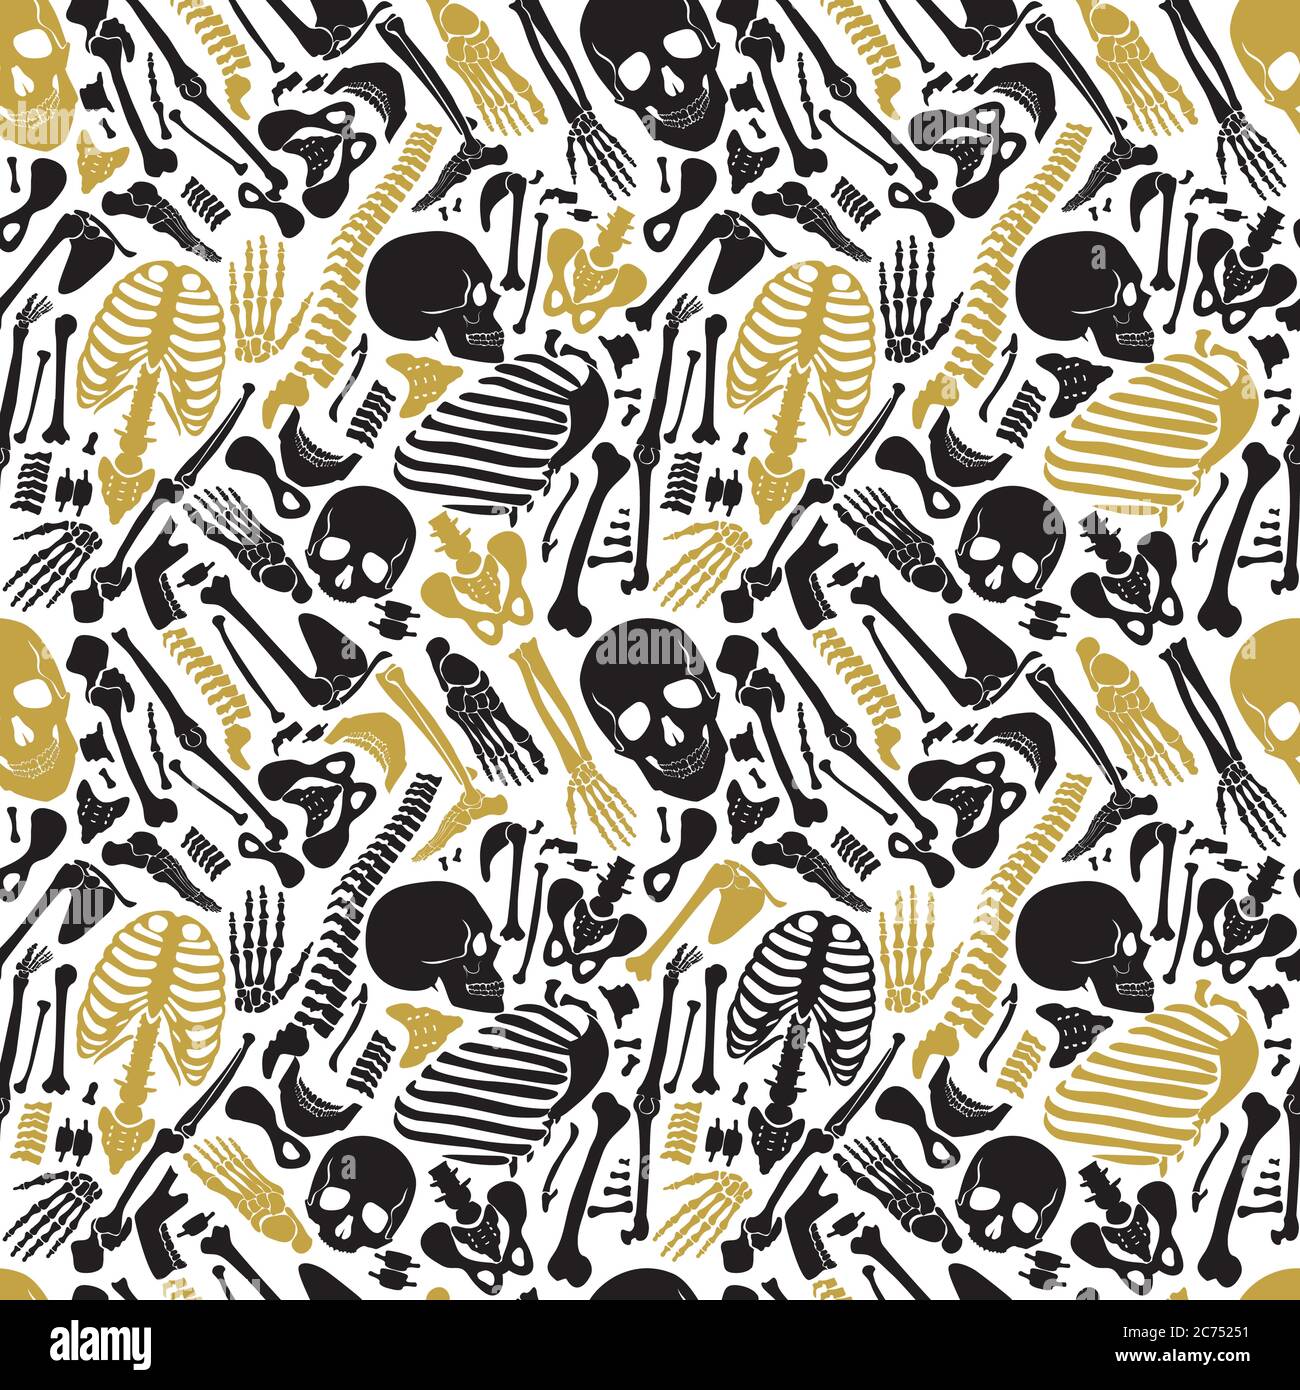 Vektor menschlichen Skelett schwarz golden Luxus nahtlose Muster mit Schädeln und anderen verschiedenen einzelnen menschlichen Teilen Knochen Stock Vektor